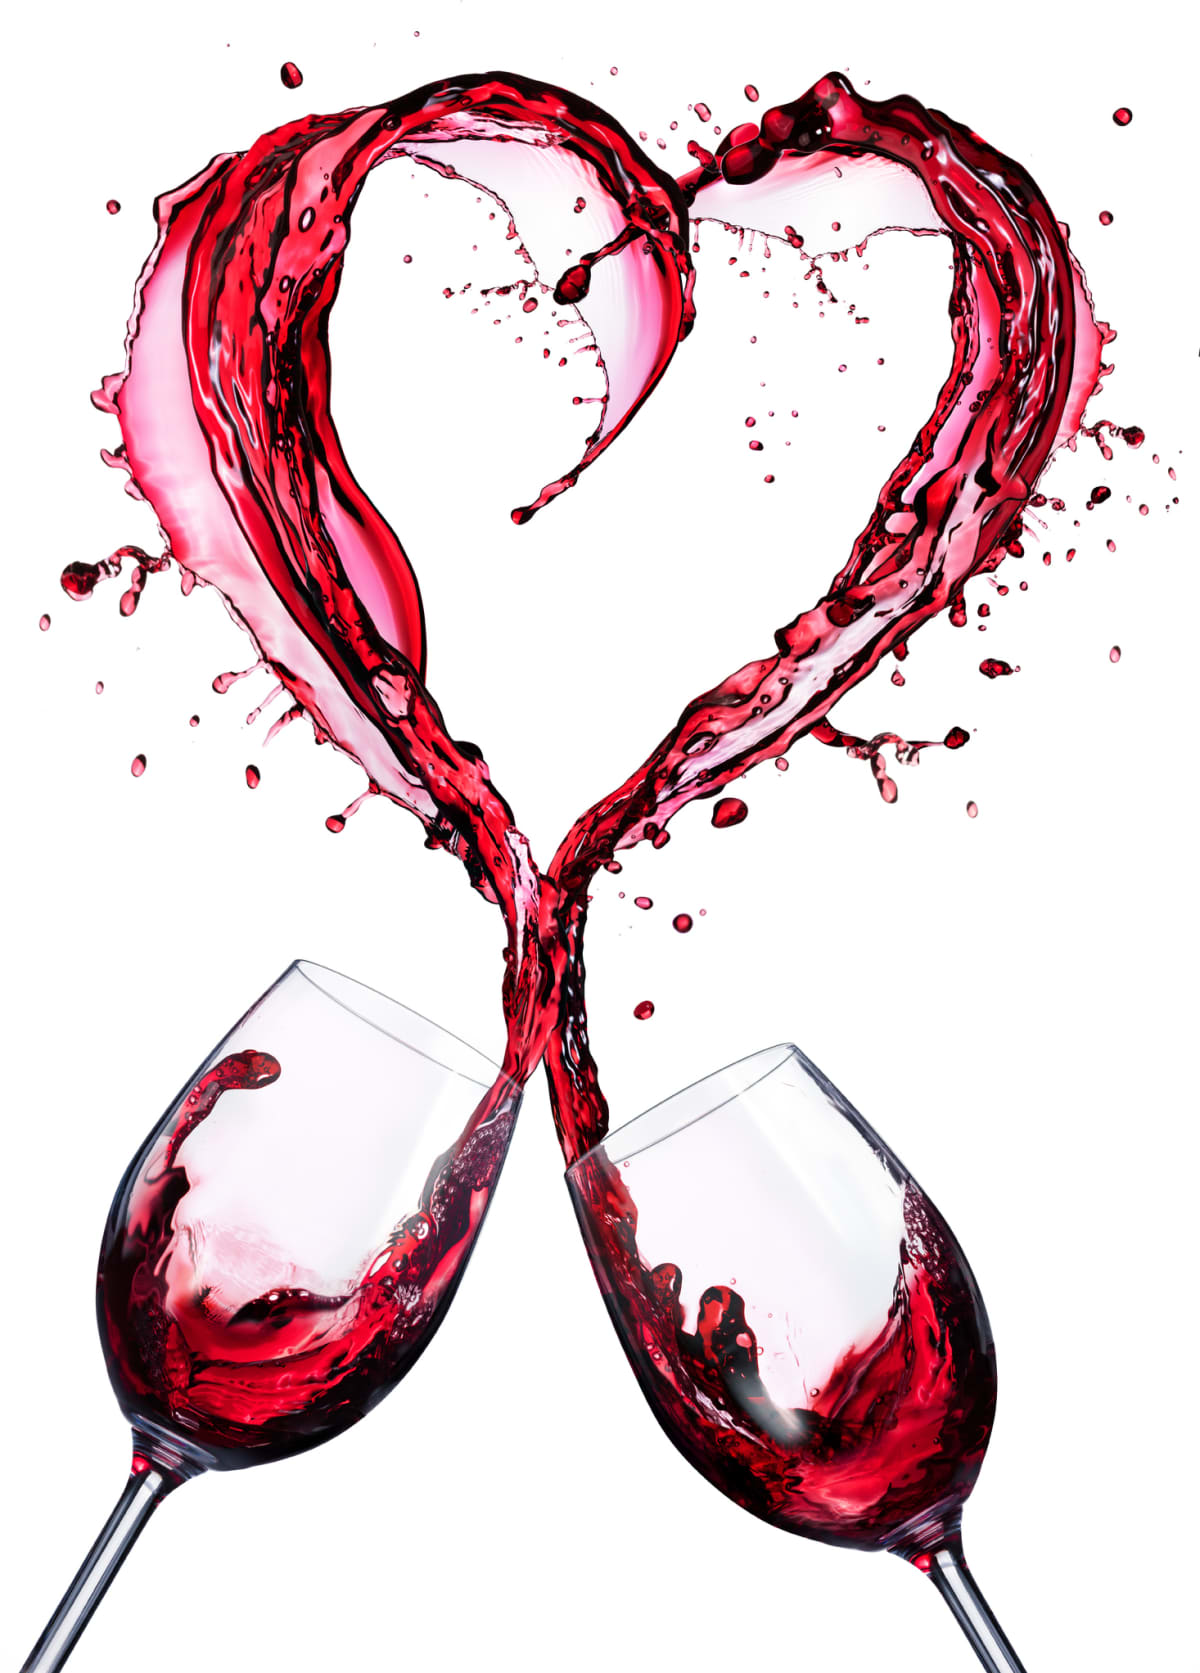 Couple Of Wineglasses In Splashing In A Heart Shape